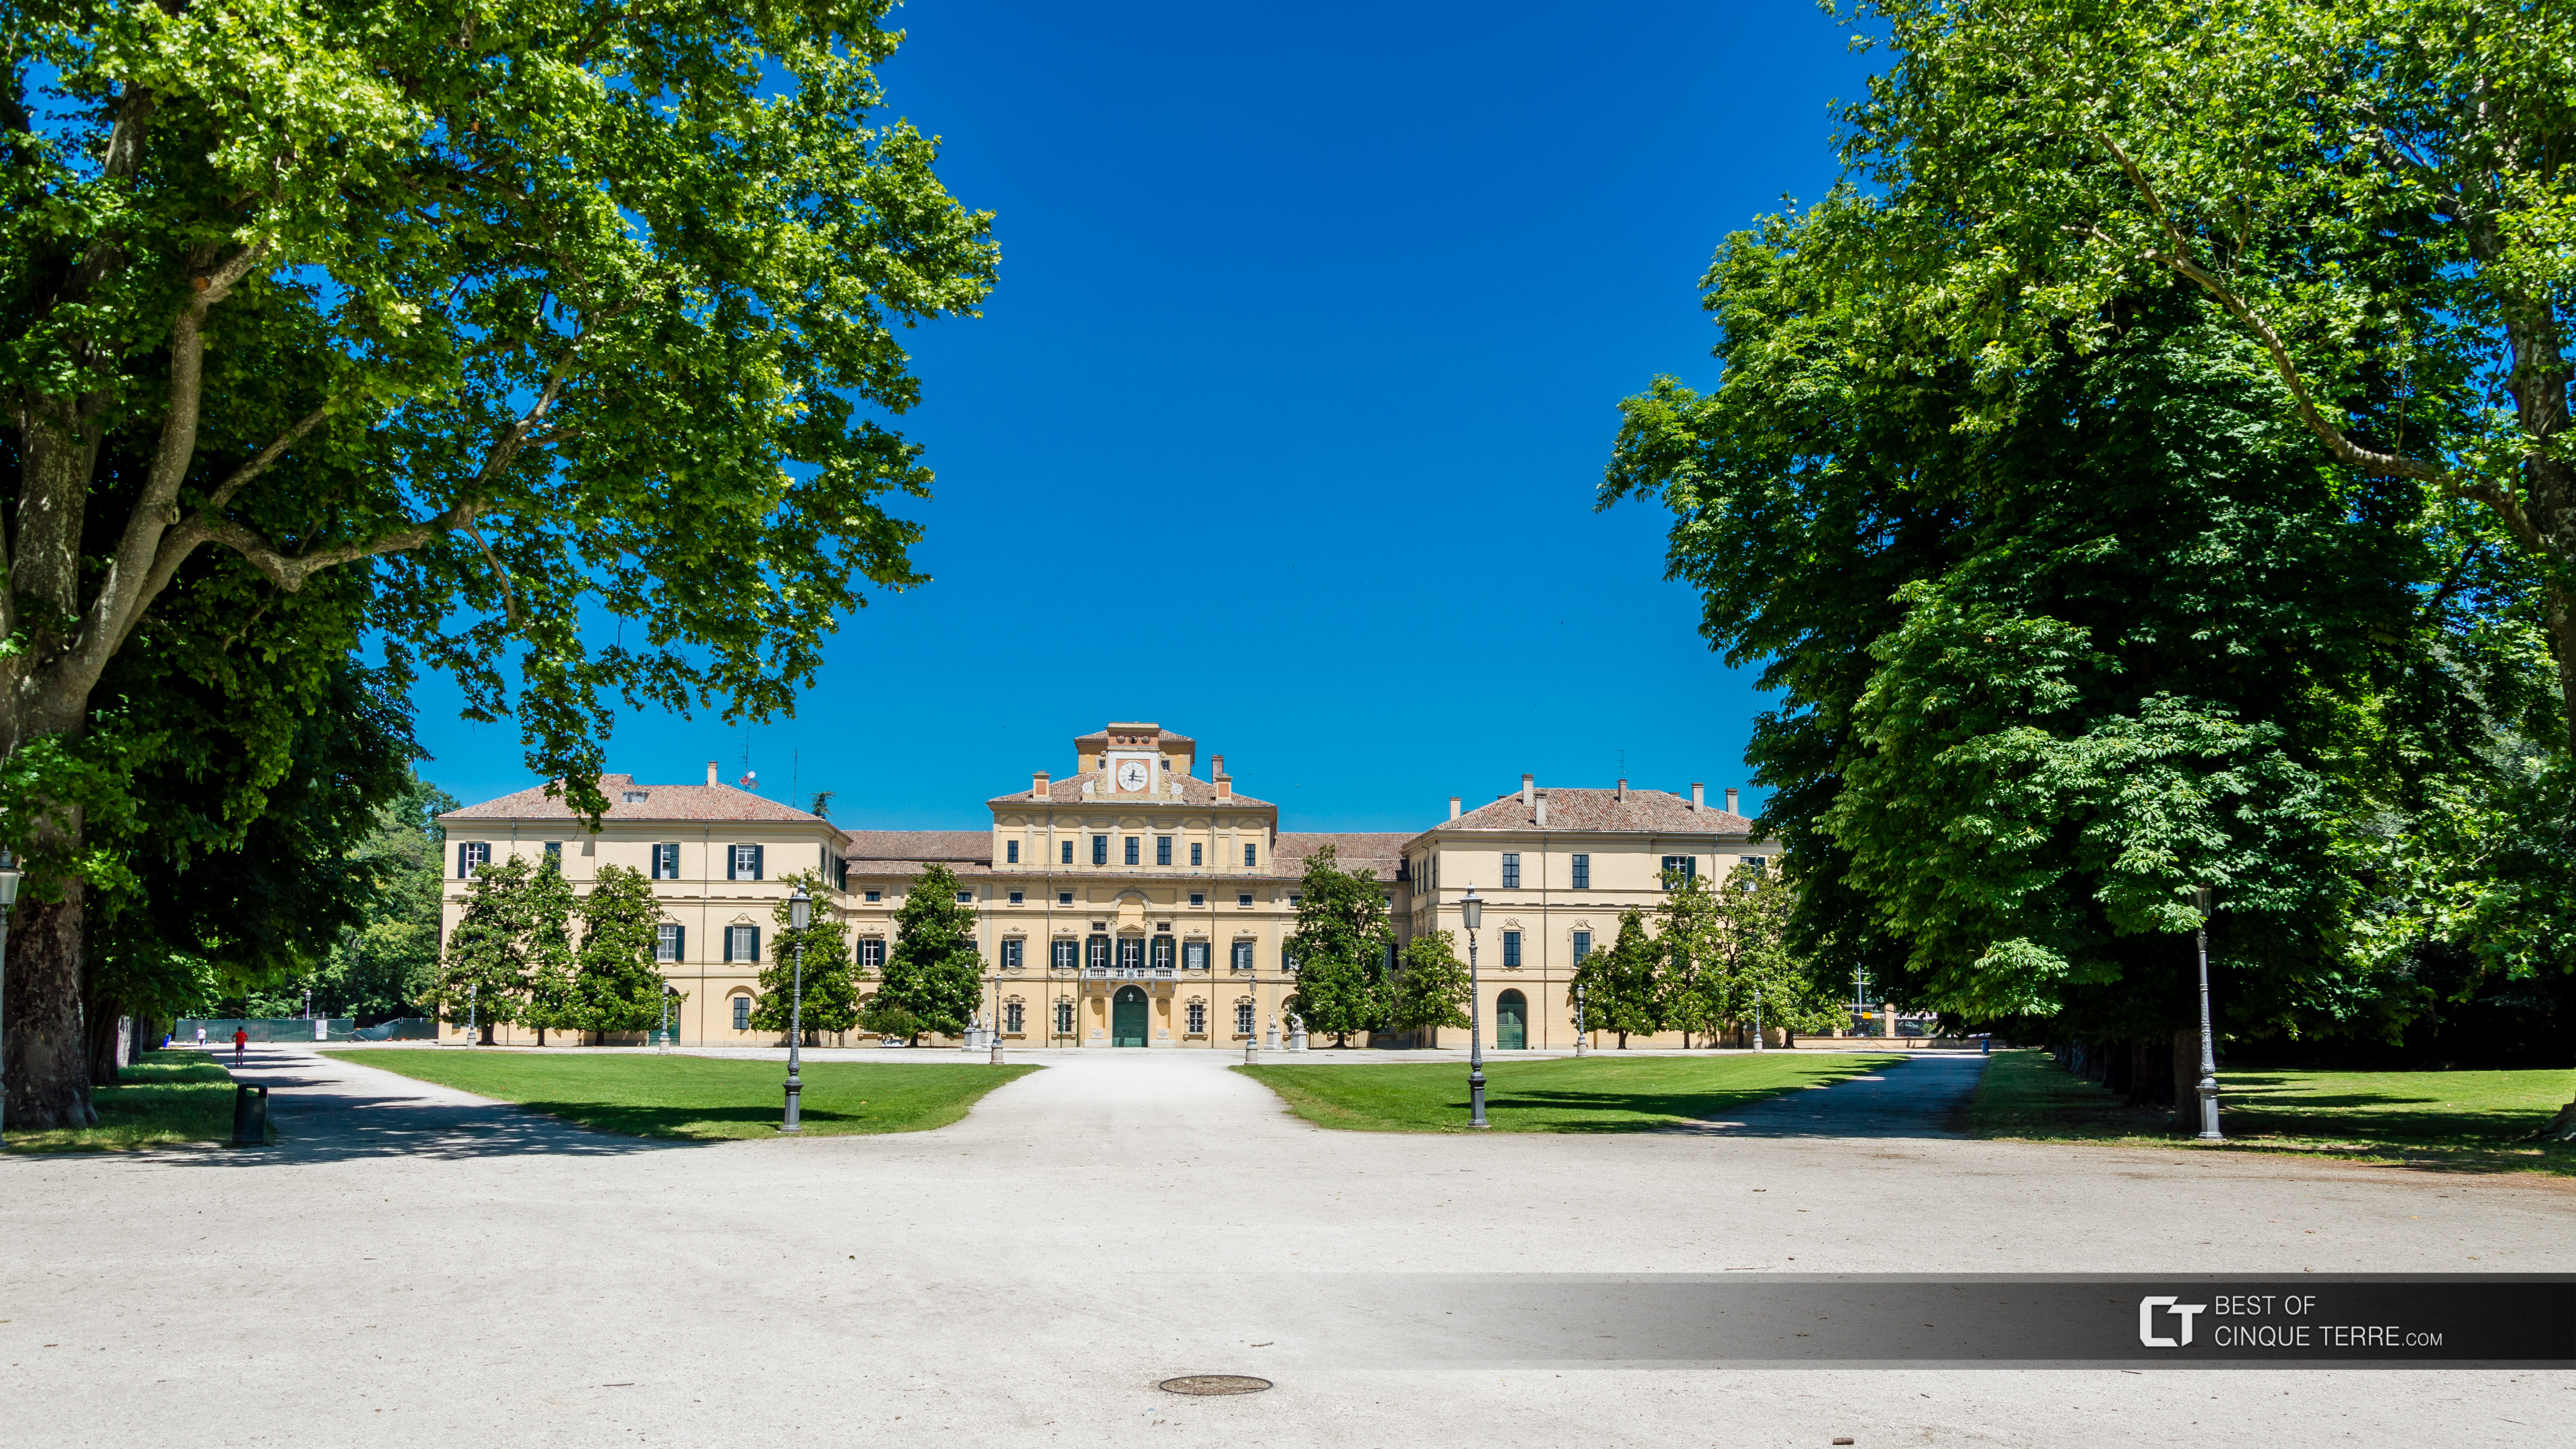 Le palais Ducal dans le parc Ducal, Parme, Italie